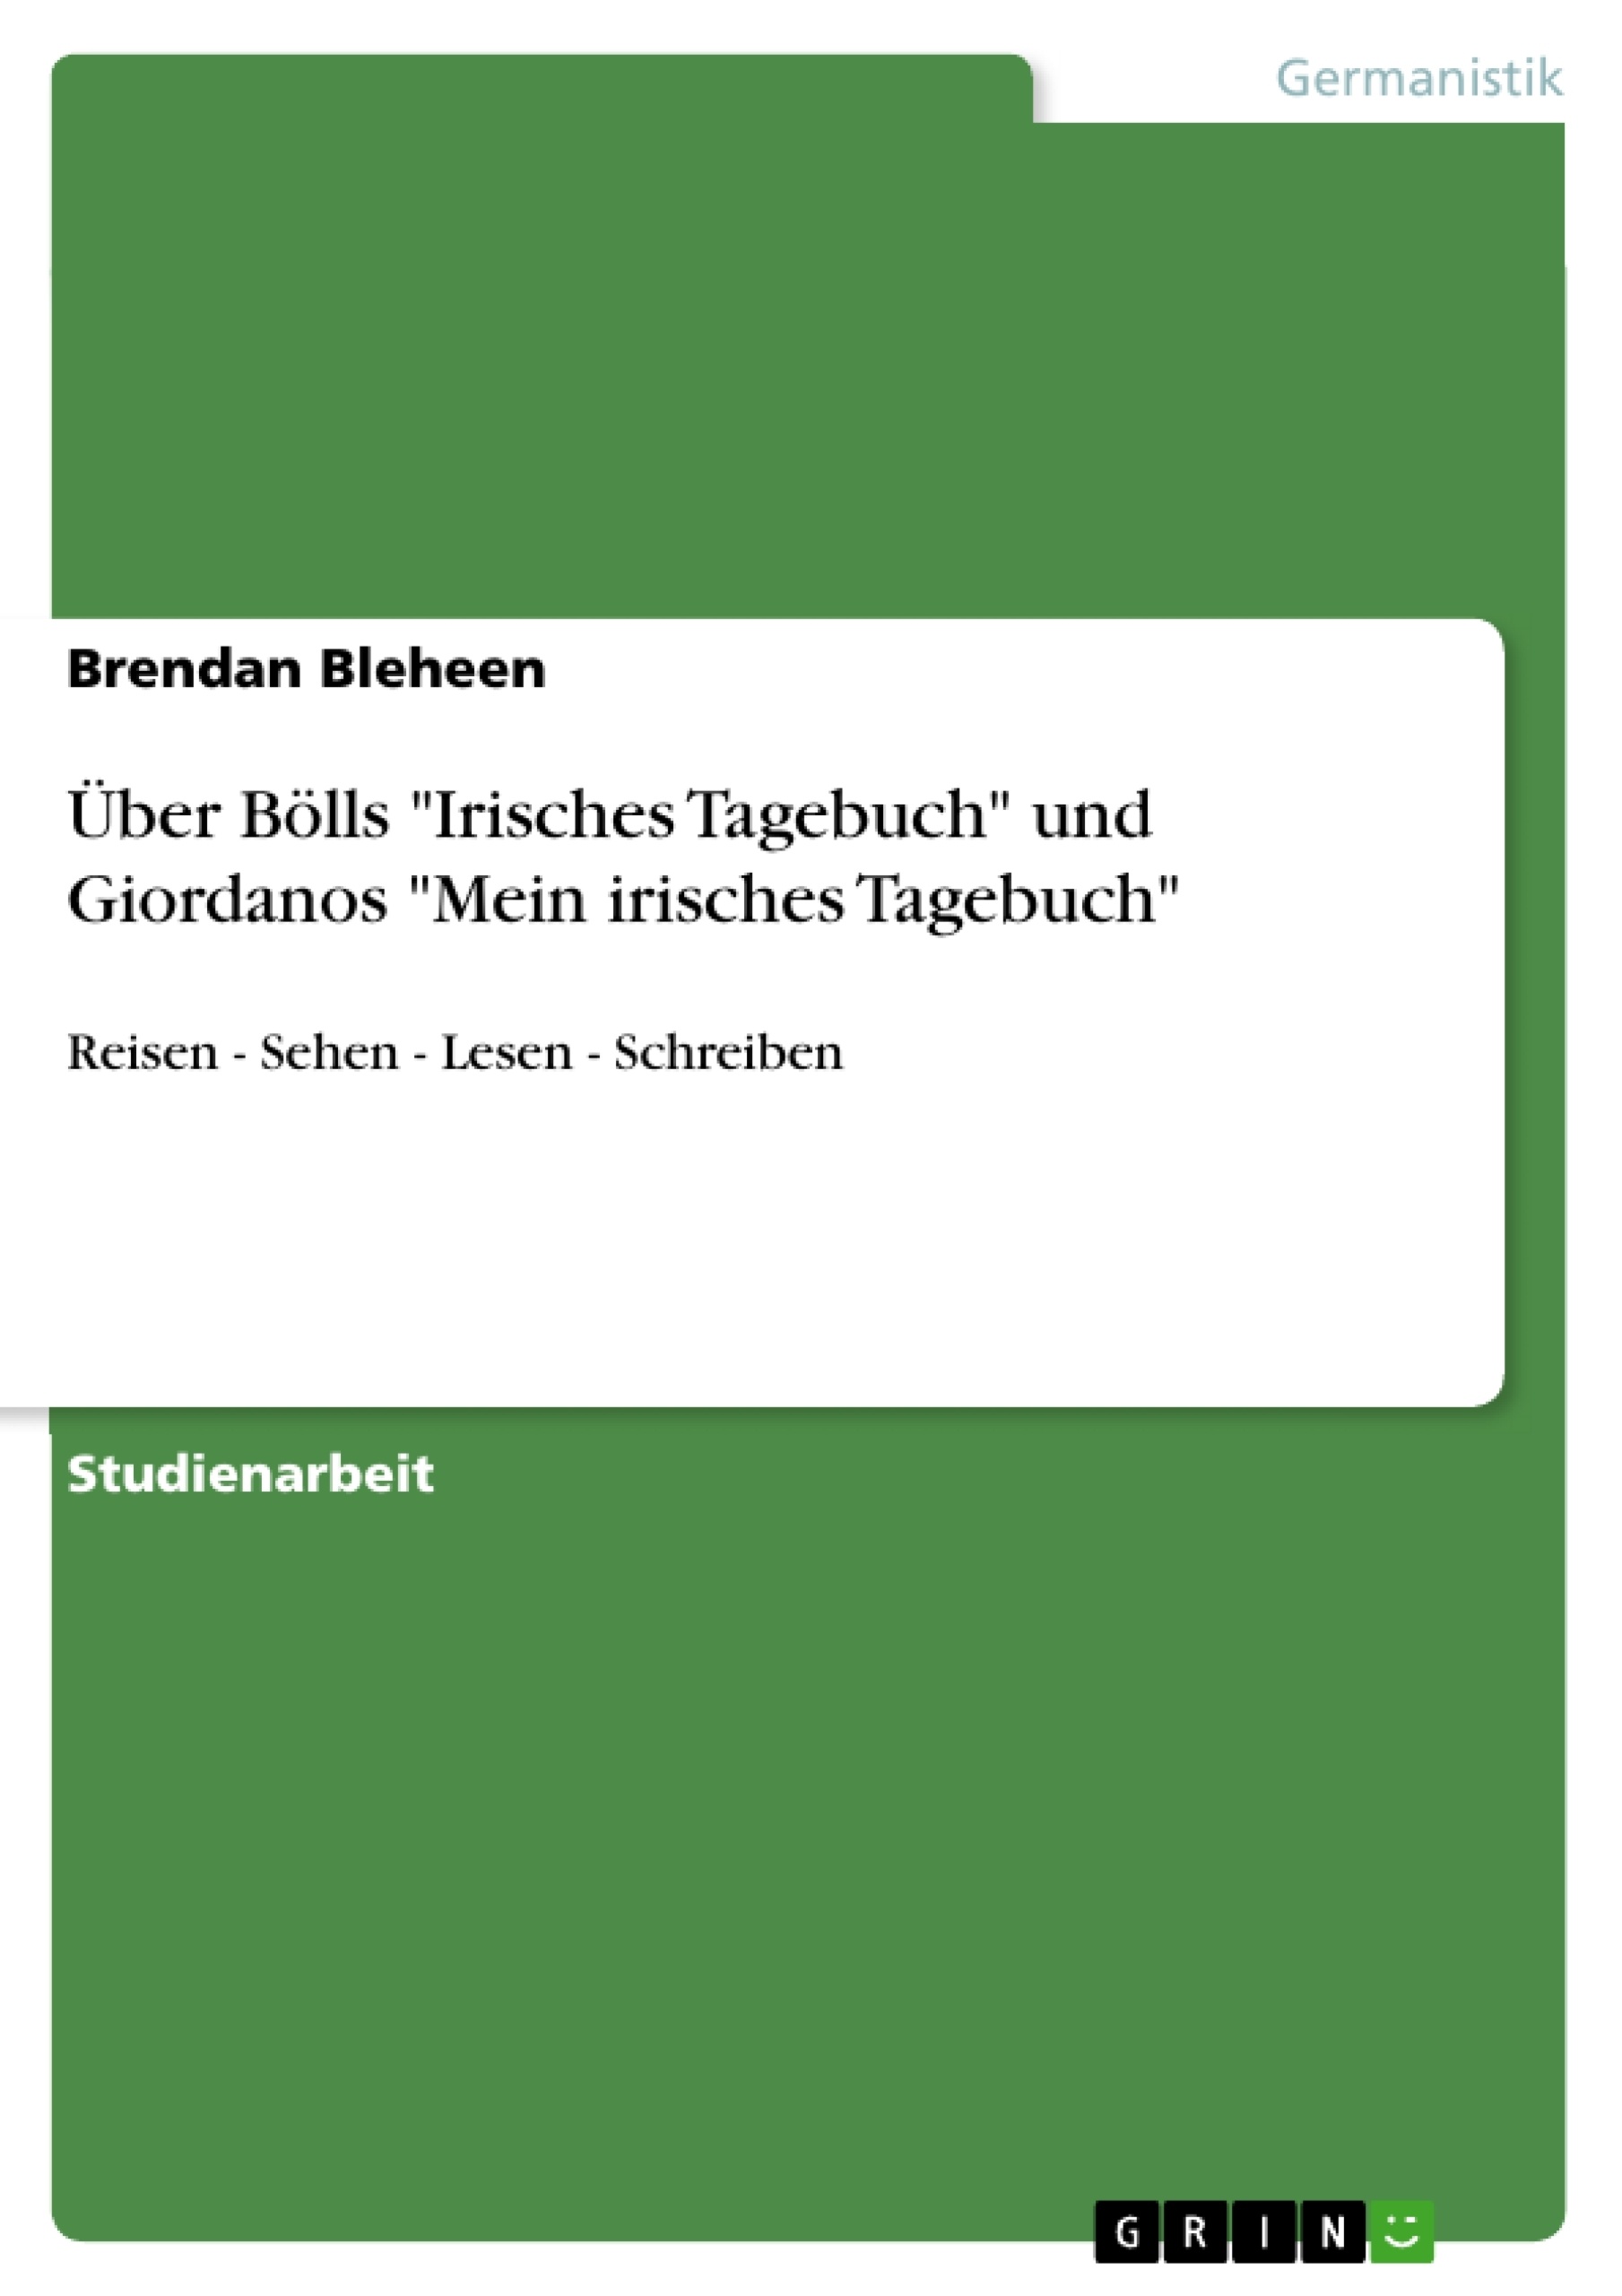 Titel: Über Bölls "Irisches Tagebuch" und Giordanos "Mein irisches Tagebuch"